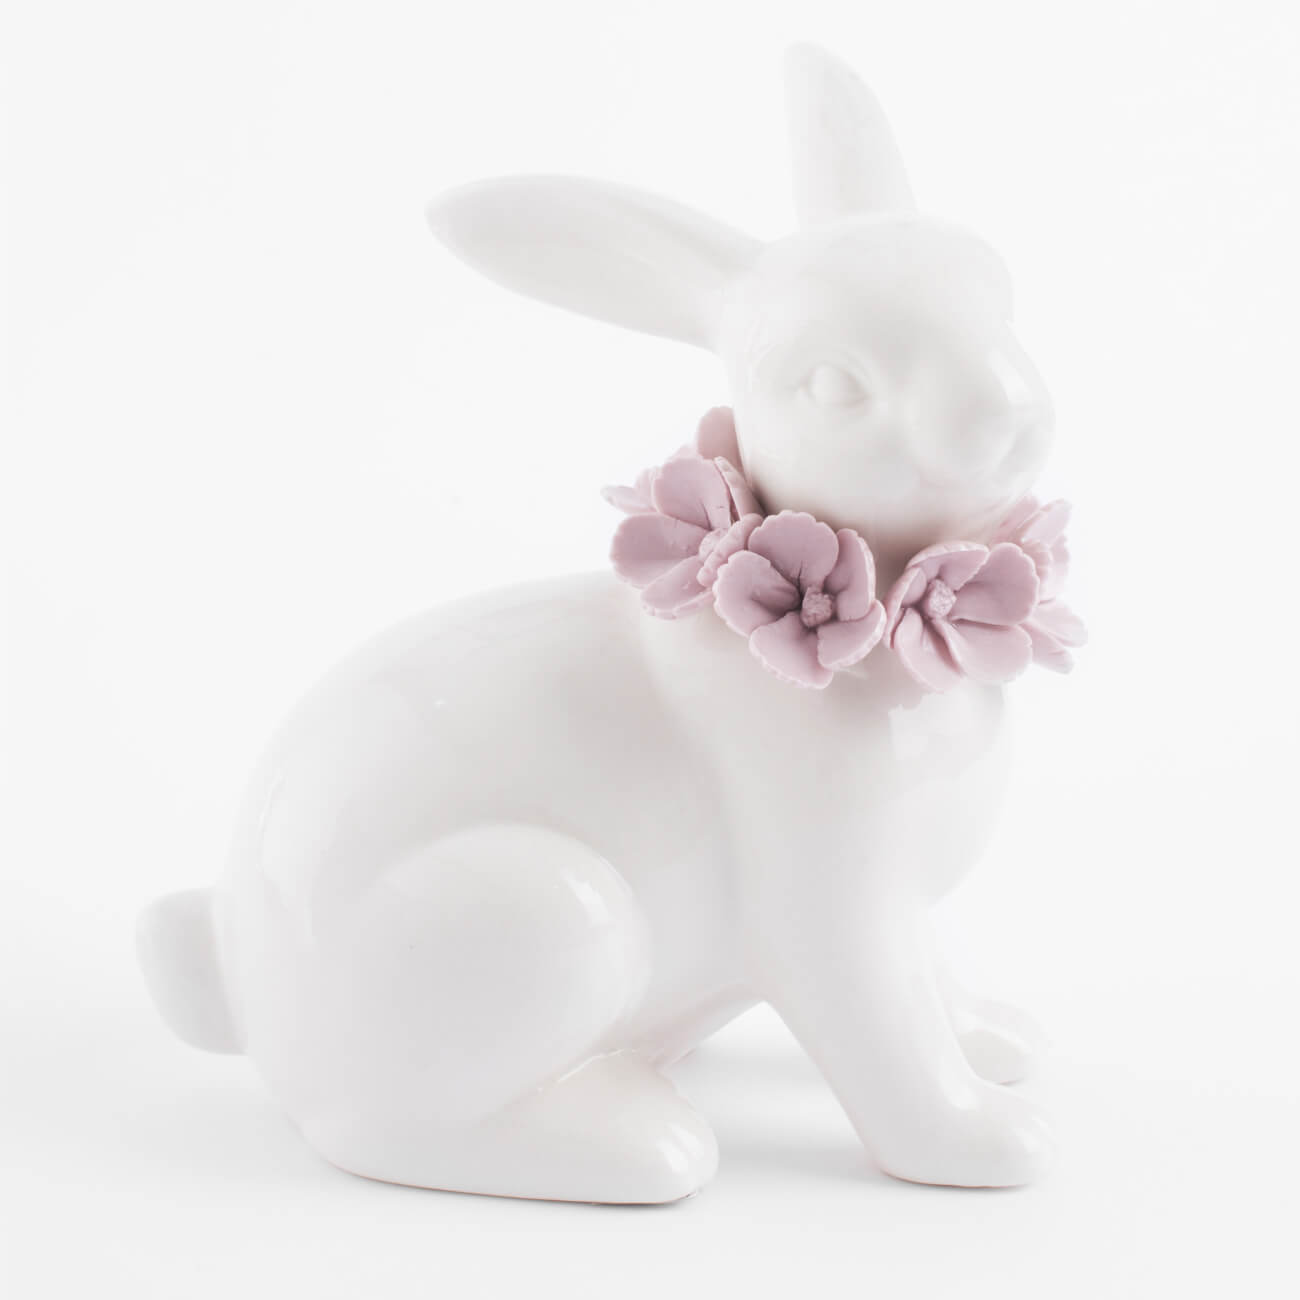 Статуэтка, 15 см, фарфор Porcelain, белая, Кролик в цветах, Pure Easter статуэтка с подсветкой 13 см фарфор p белая кролик с ами easter